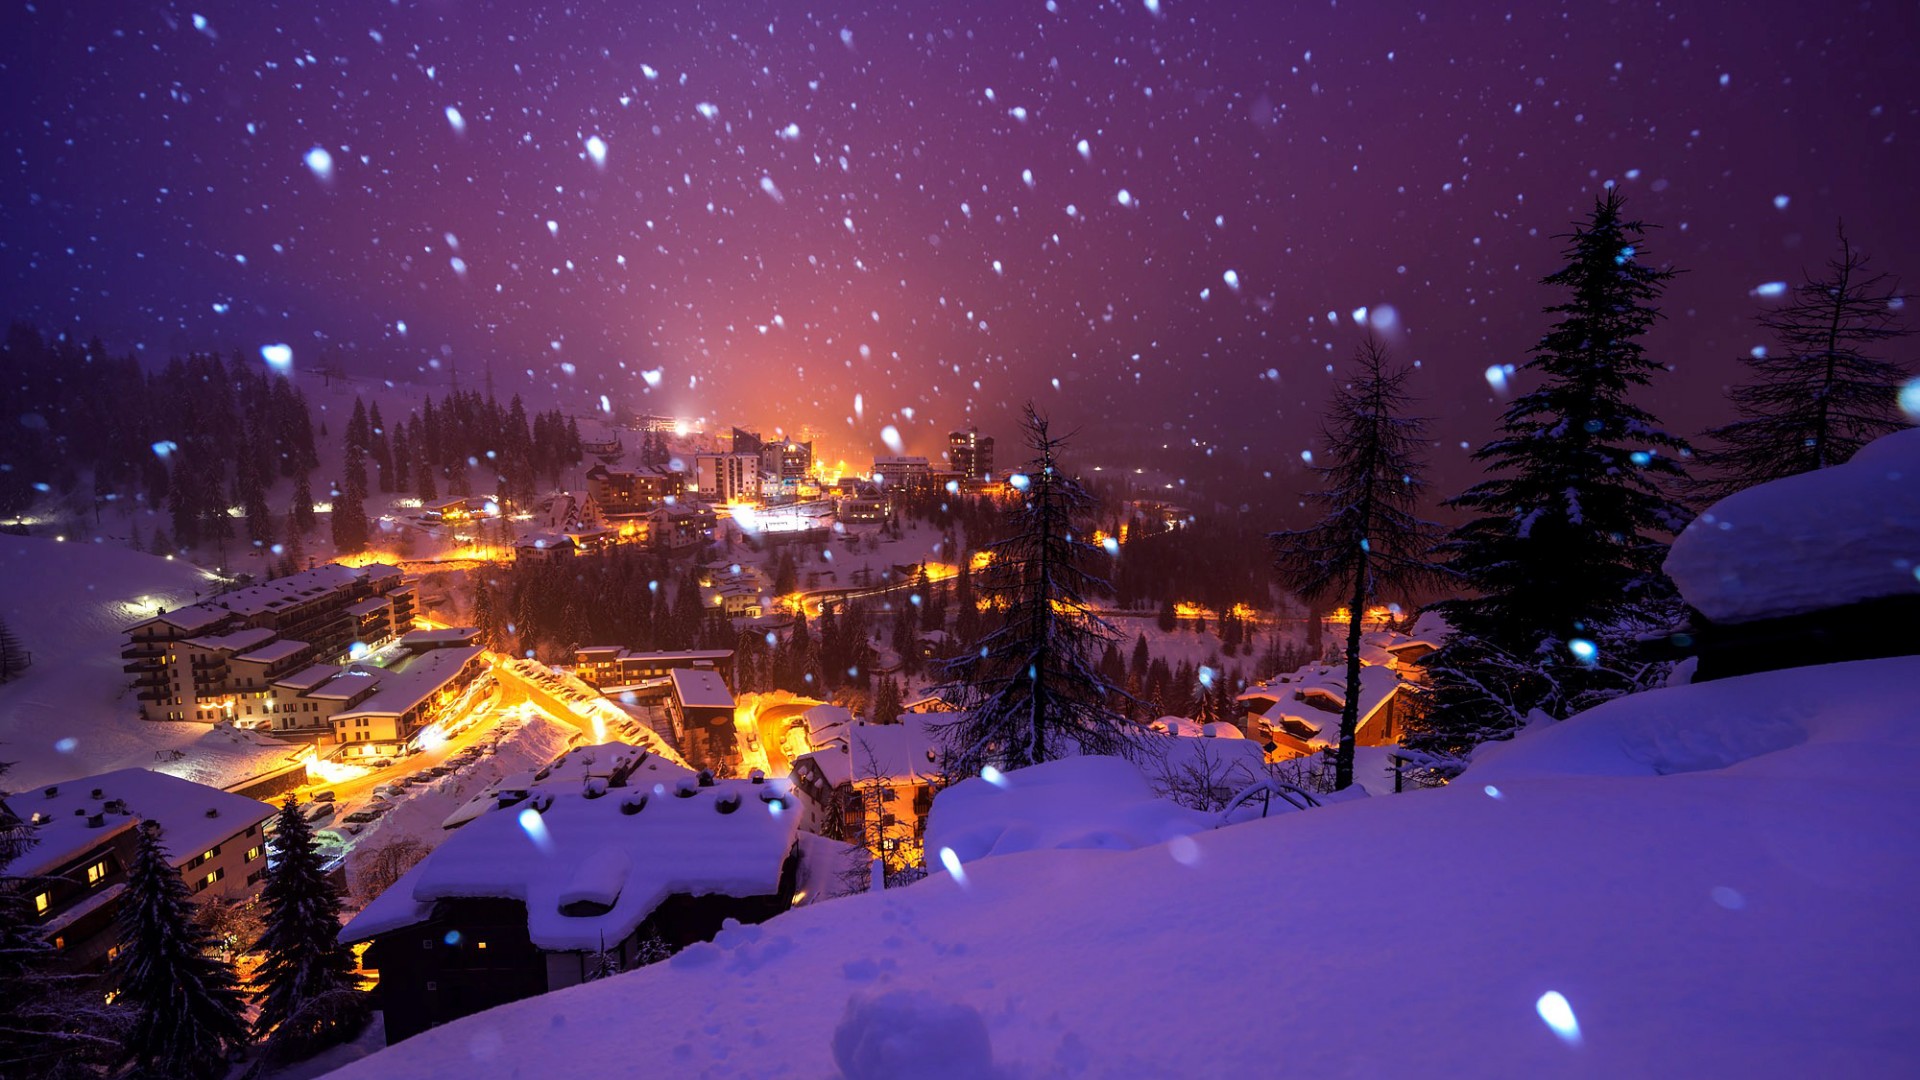 意大利,阿尔卑斯山,贝加莫,夜晚,飘雪,灯光,风景桌面壁纸